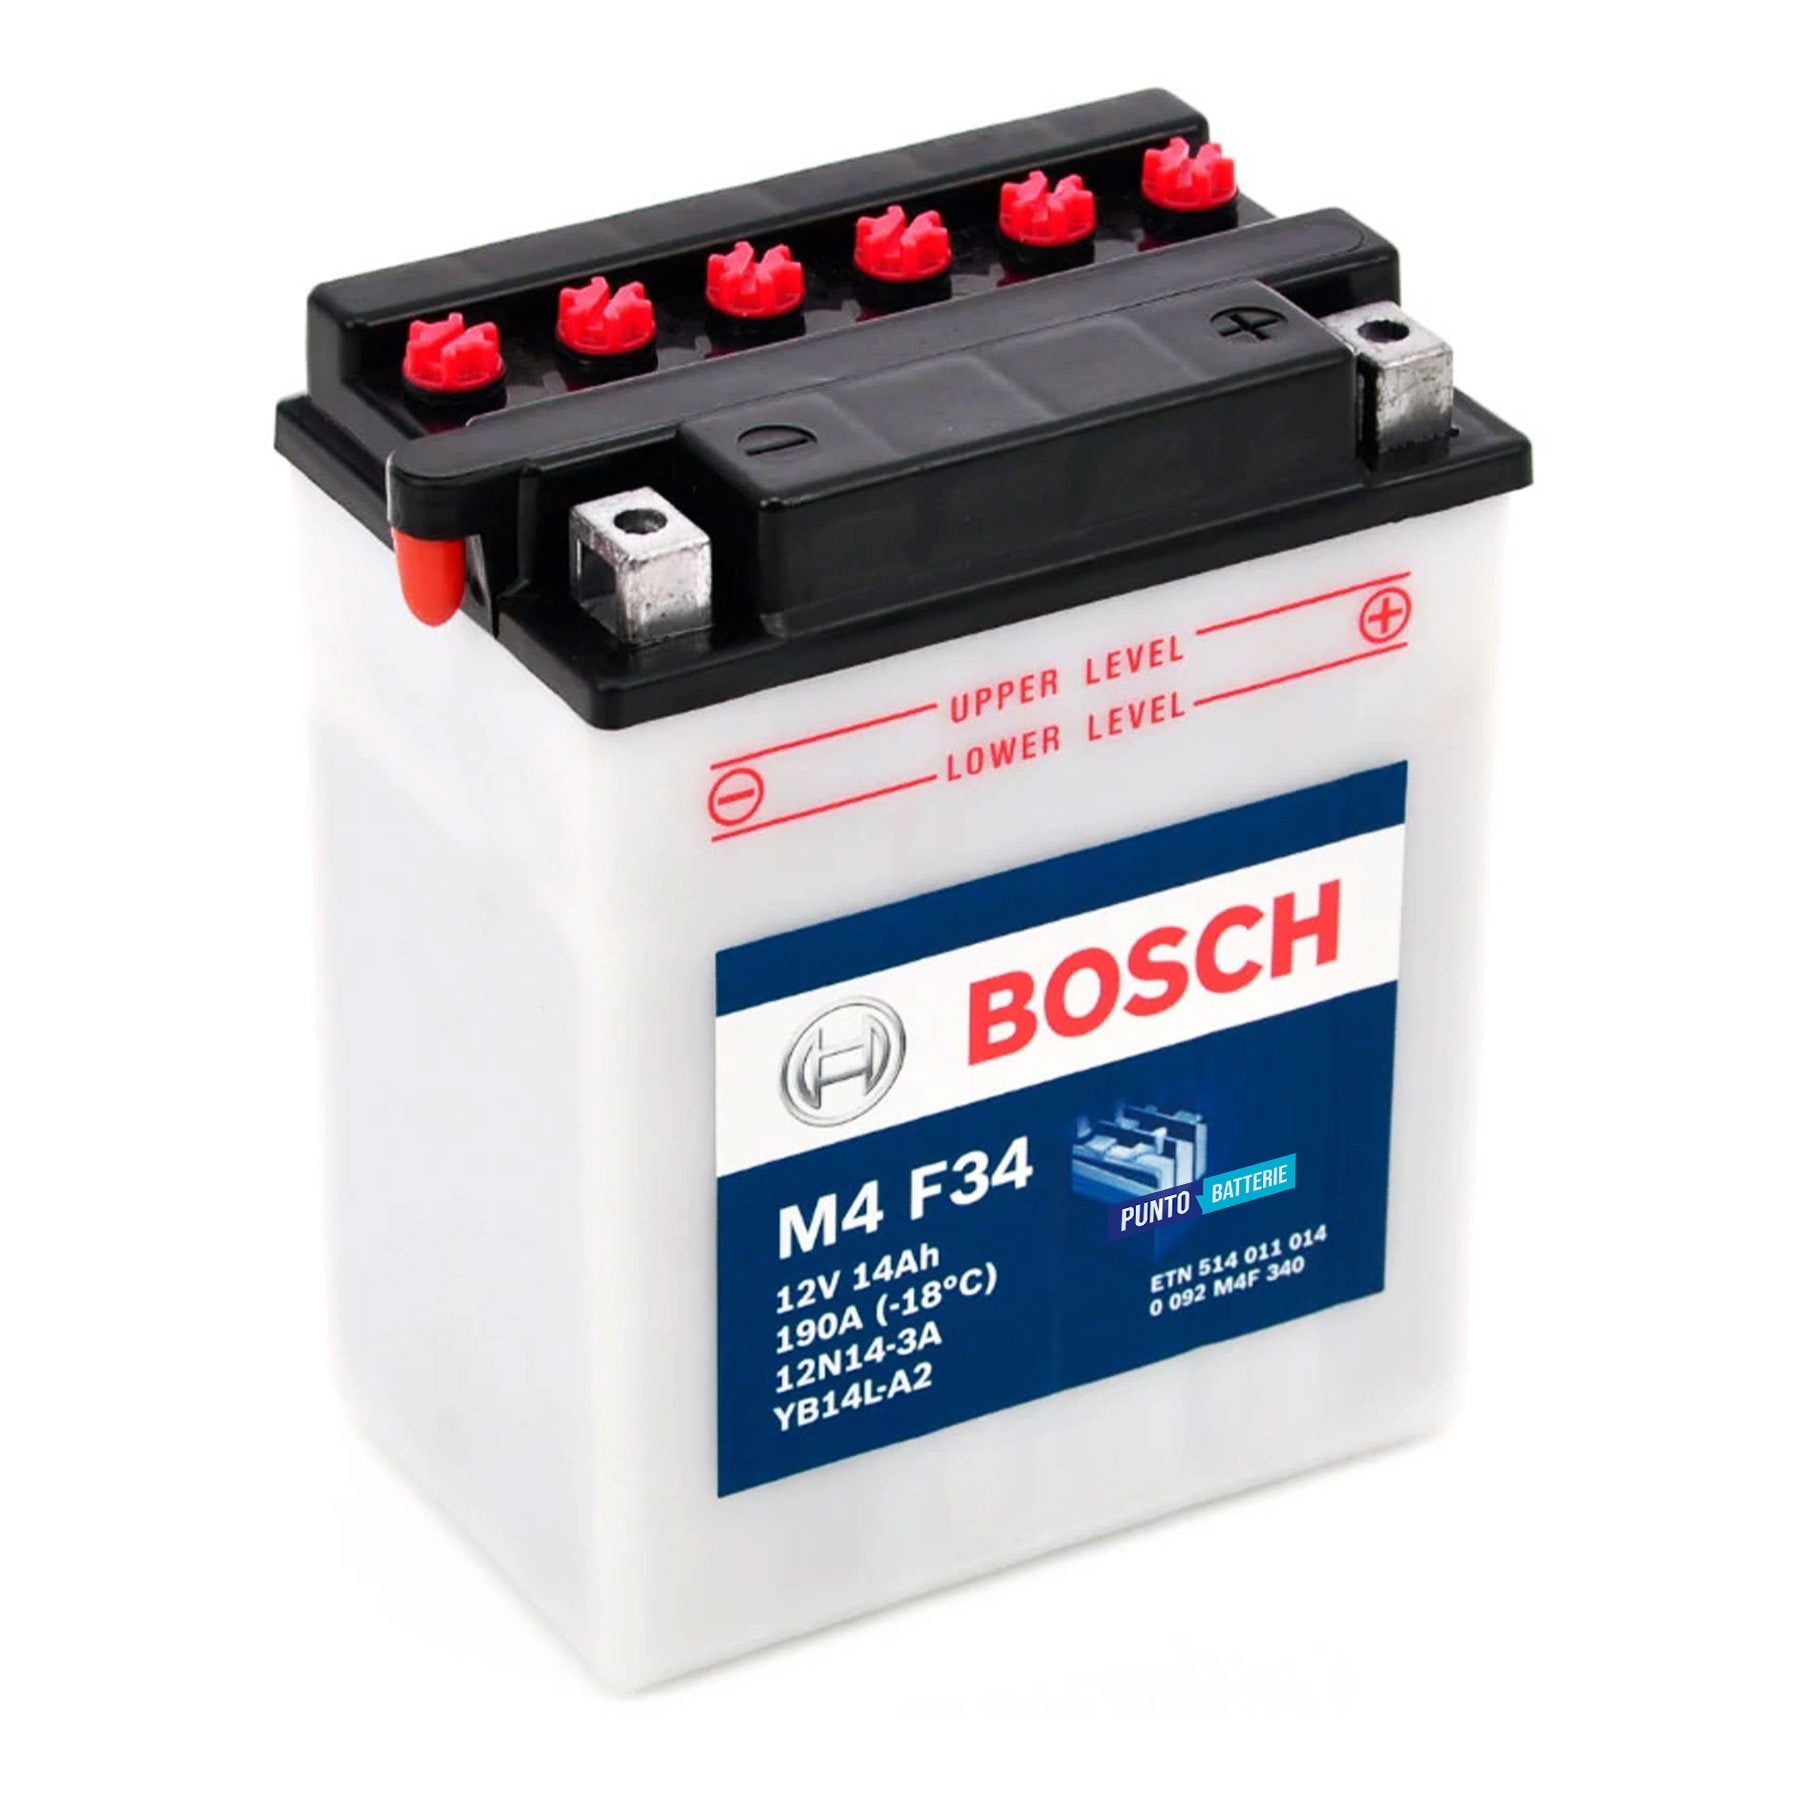 Batteria originale Bosch M4 M4F34, dimensioni 134 x 89 x 145, polo positivo a destra, 12 volt, 14 amperora, 190 ampere. Batteria per moto, scooter e powersport.